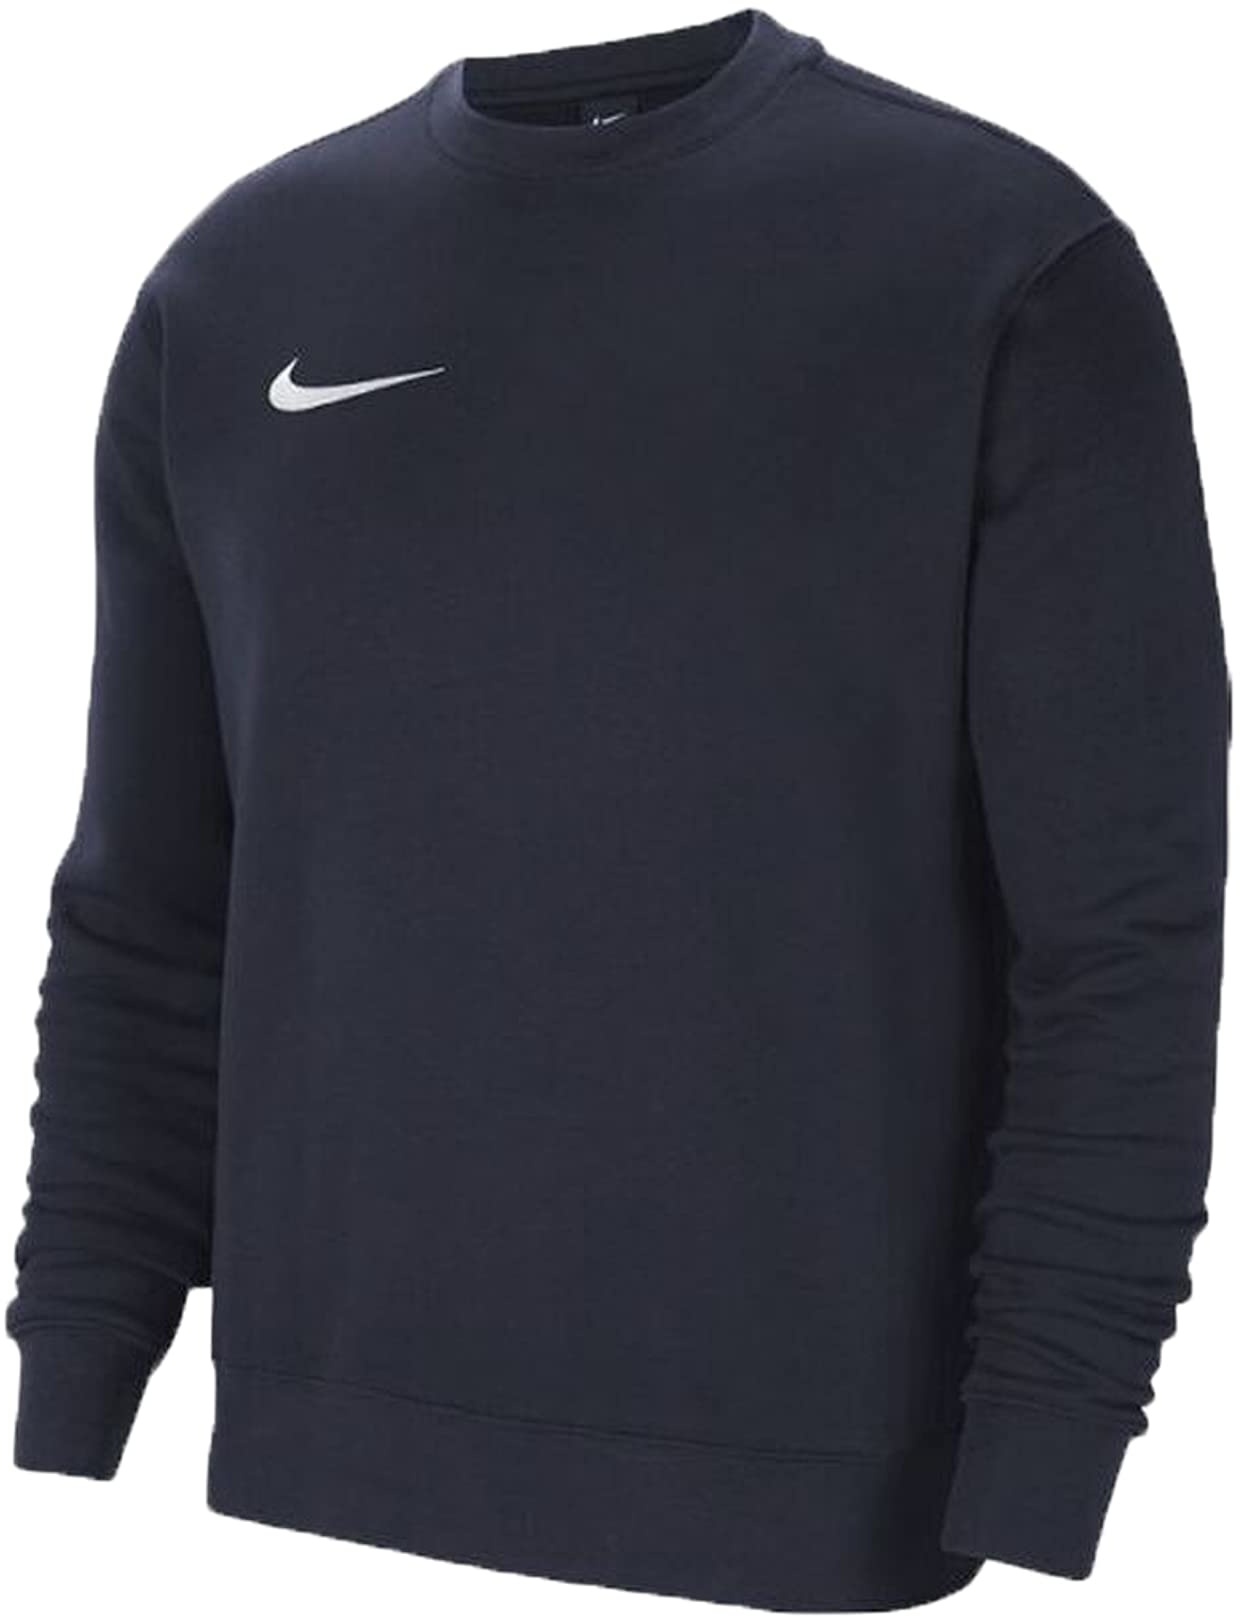 Nike CW6904 Y NK FLC PARK20 CREW Sweatshirt boys obsidian/white, XL(158-170cm)